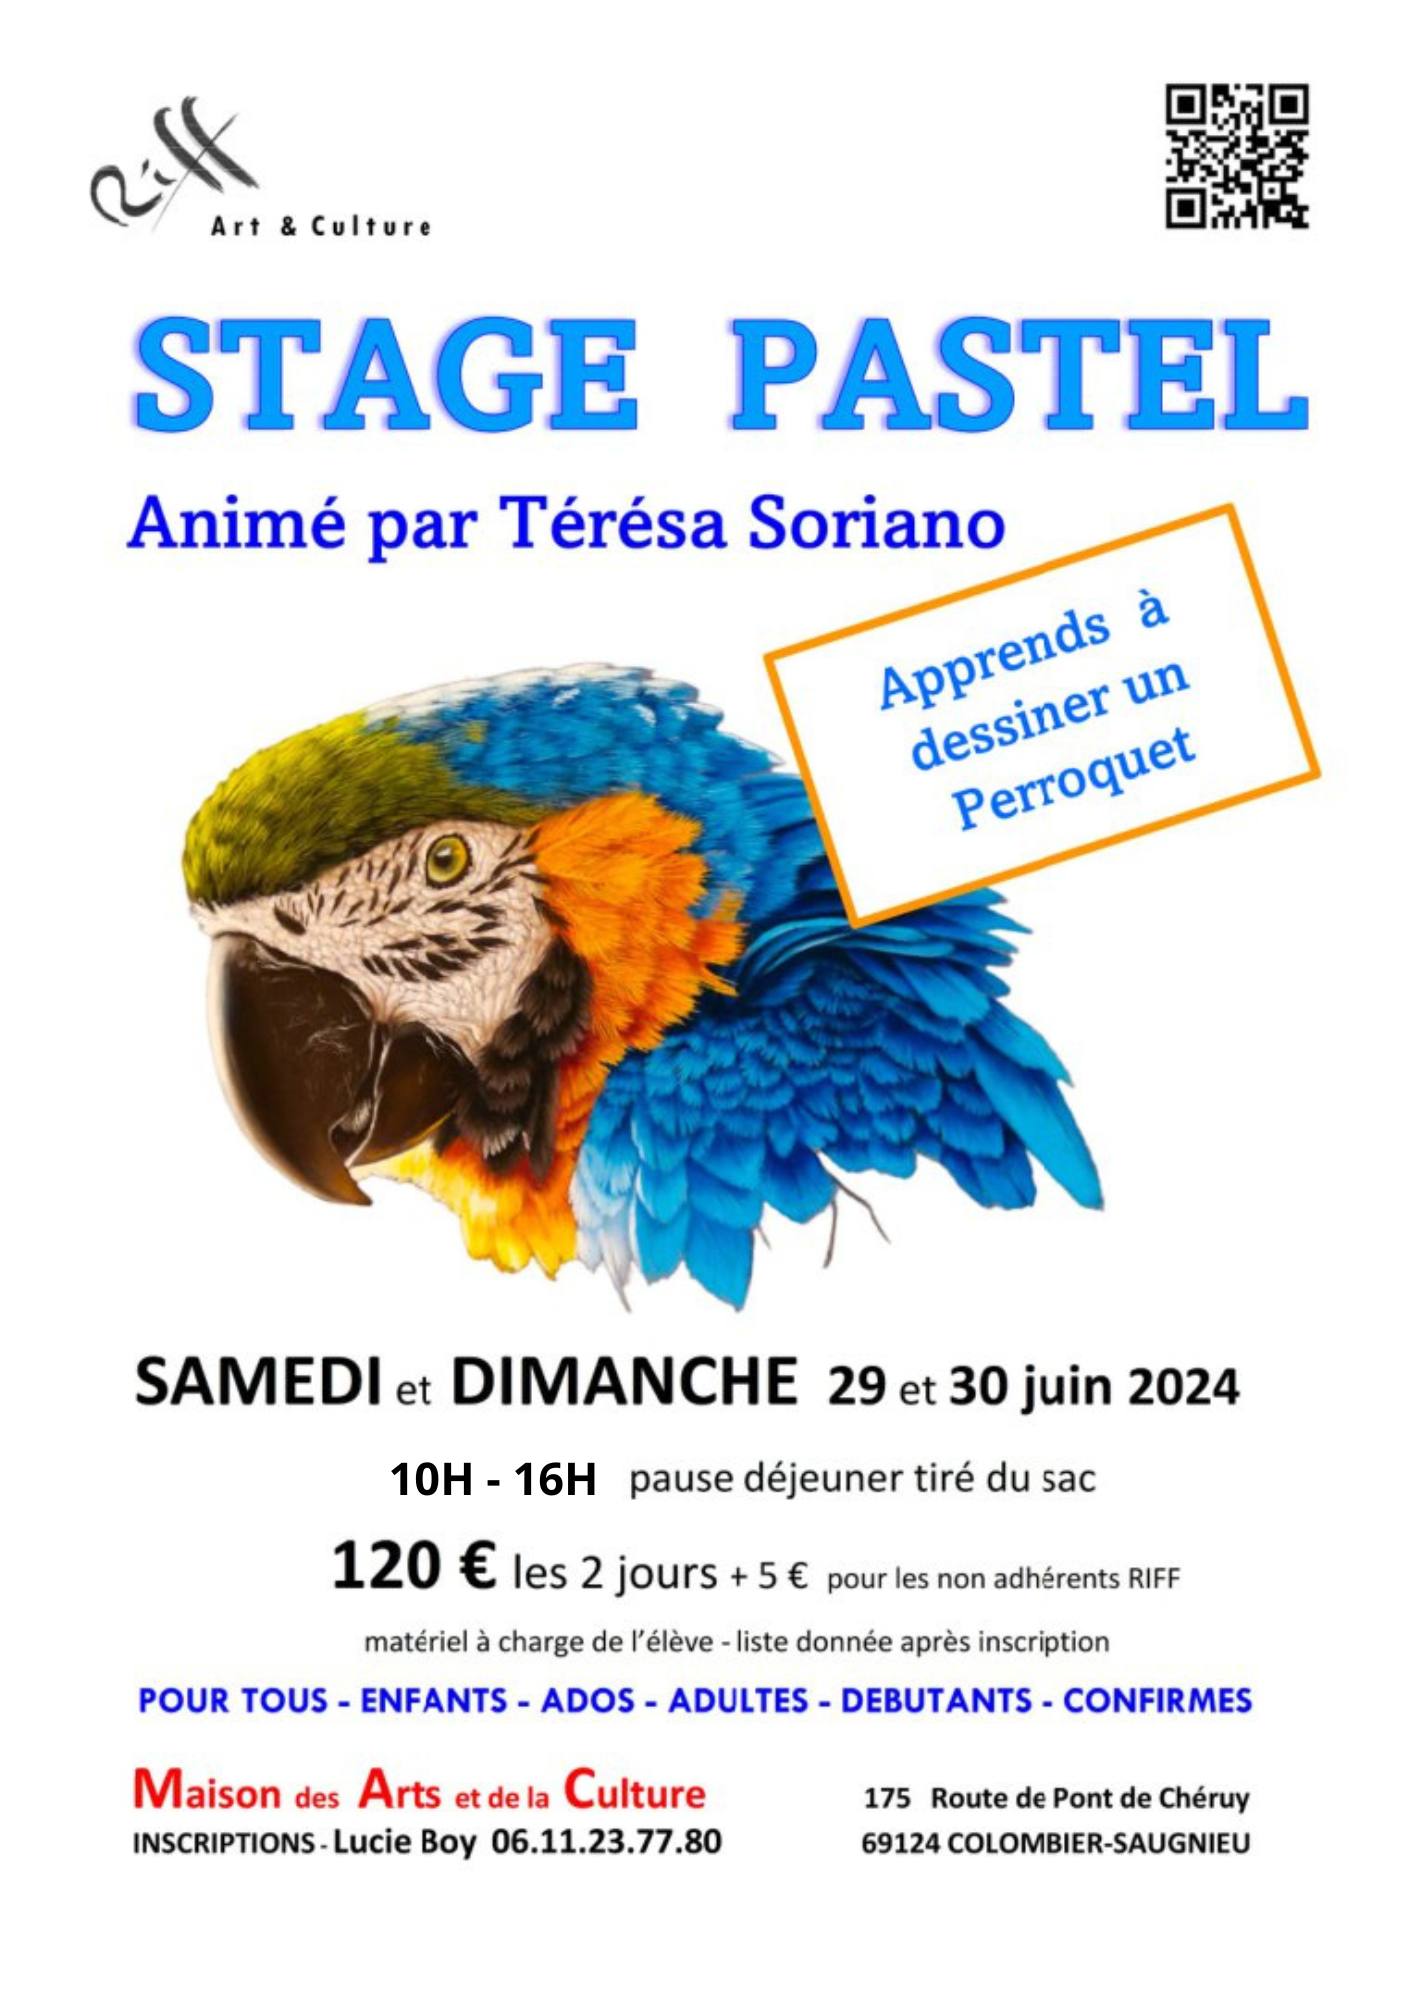 Affiche du stage de Pastel sur le dessin d'un perroquet par RIFF samedi 29 et dimanche 30 juin